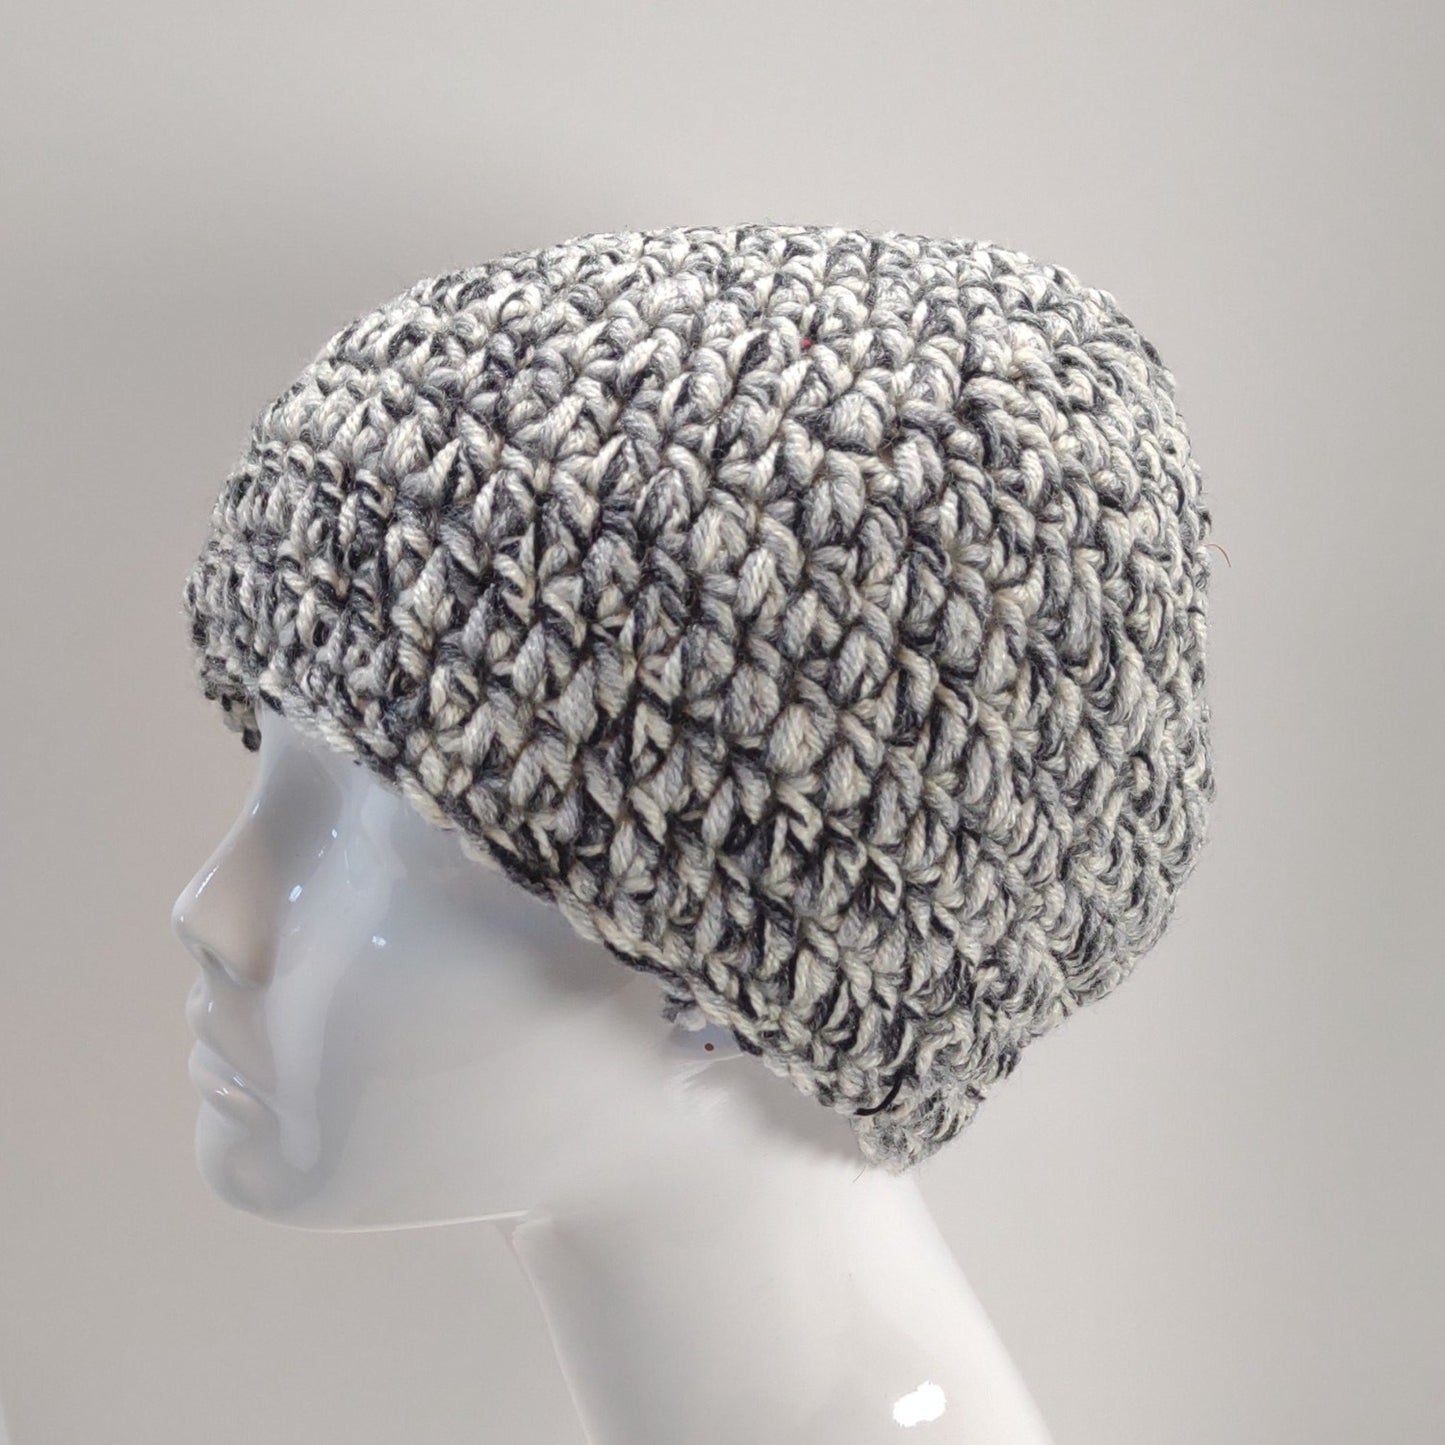 Black, White, & Gray Crocheted Cap